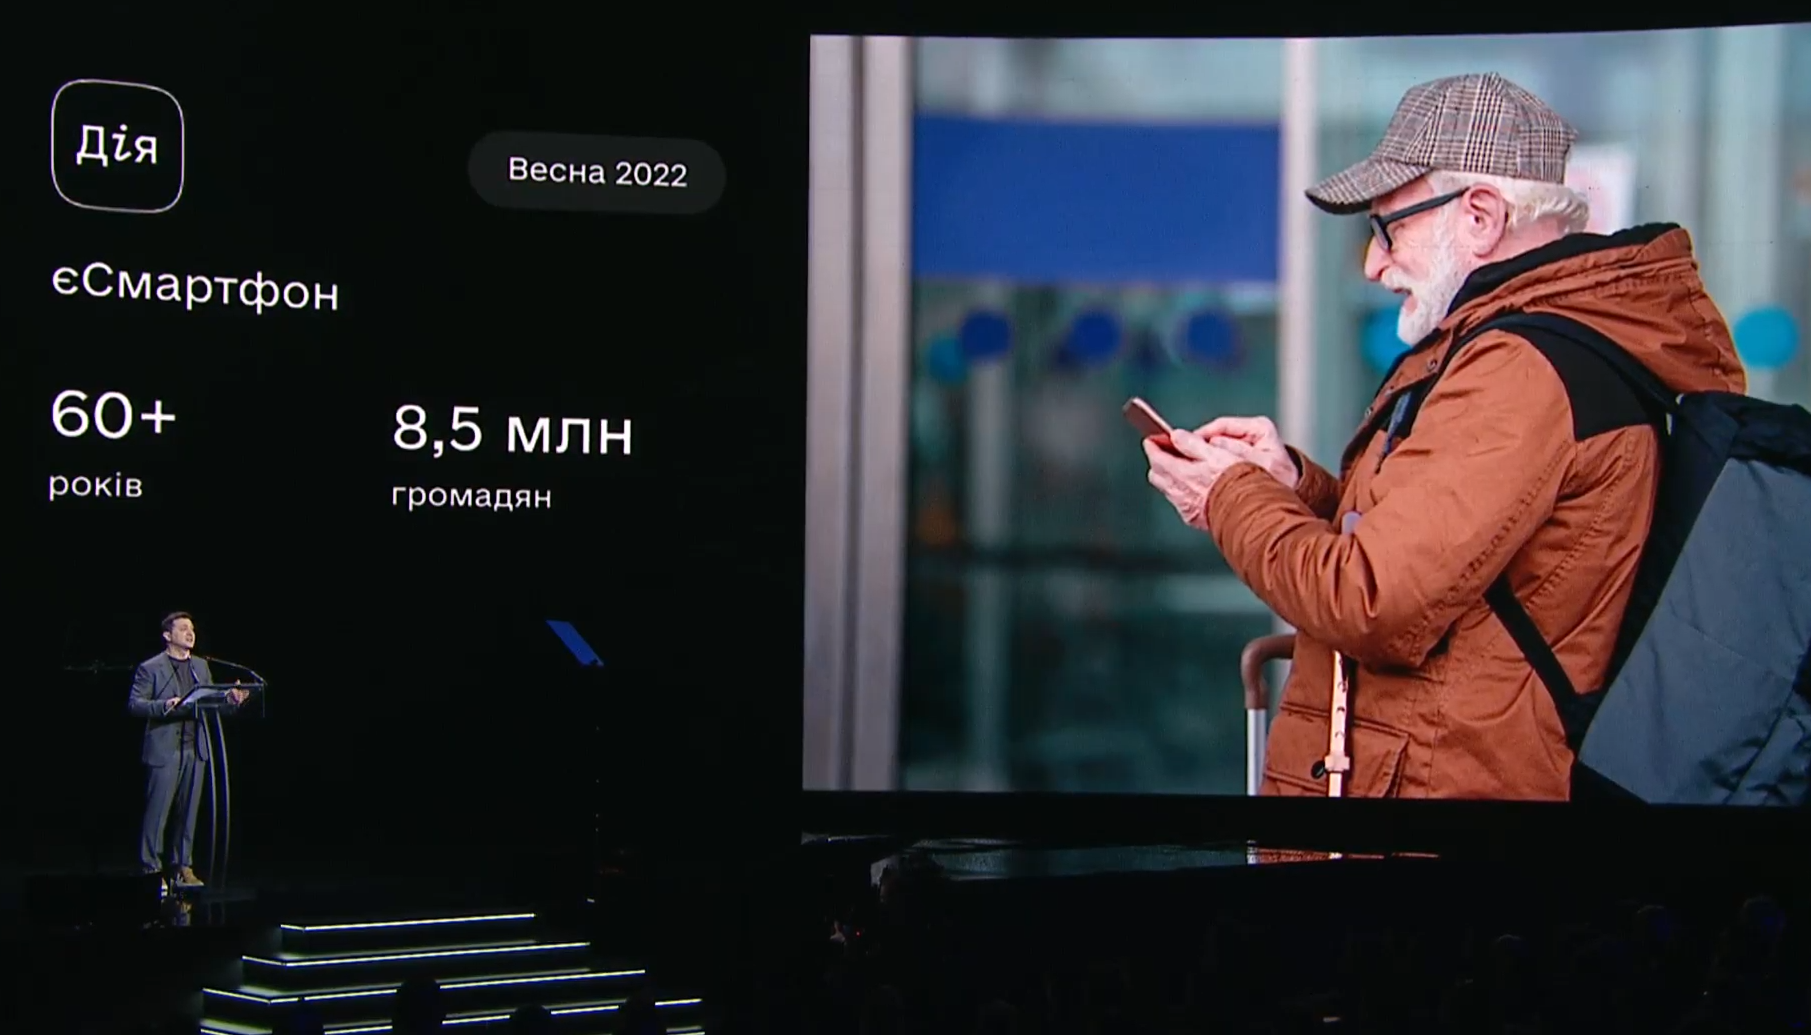 Starsi Ukraińcy otrzymają darmowe smartfony z preferencyjną stawką - ogłosił Zełenski „Inicjatywę Smartfon”